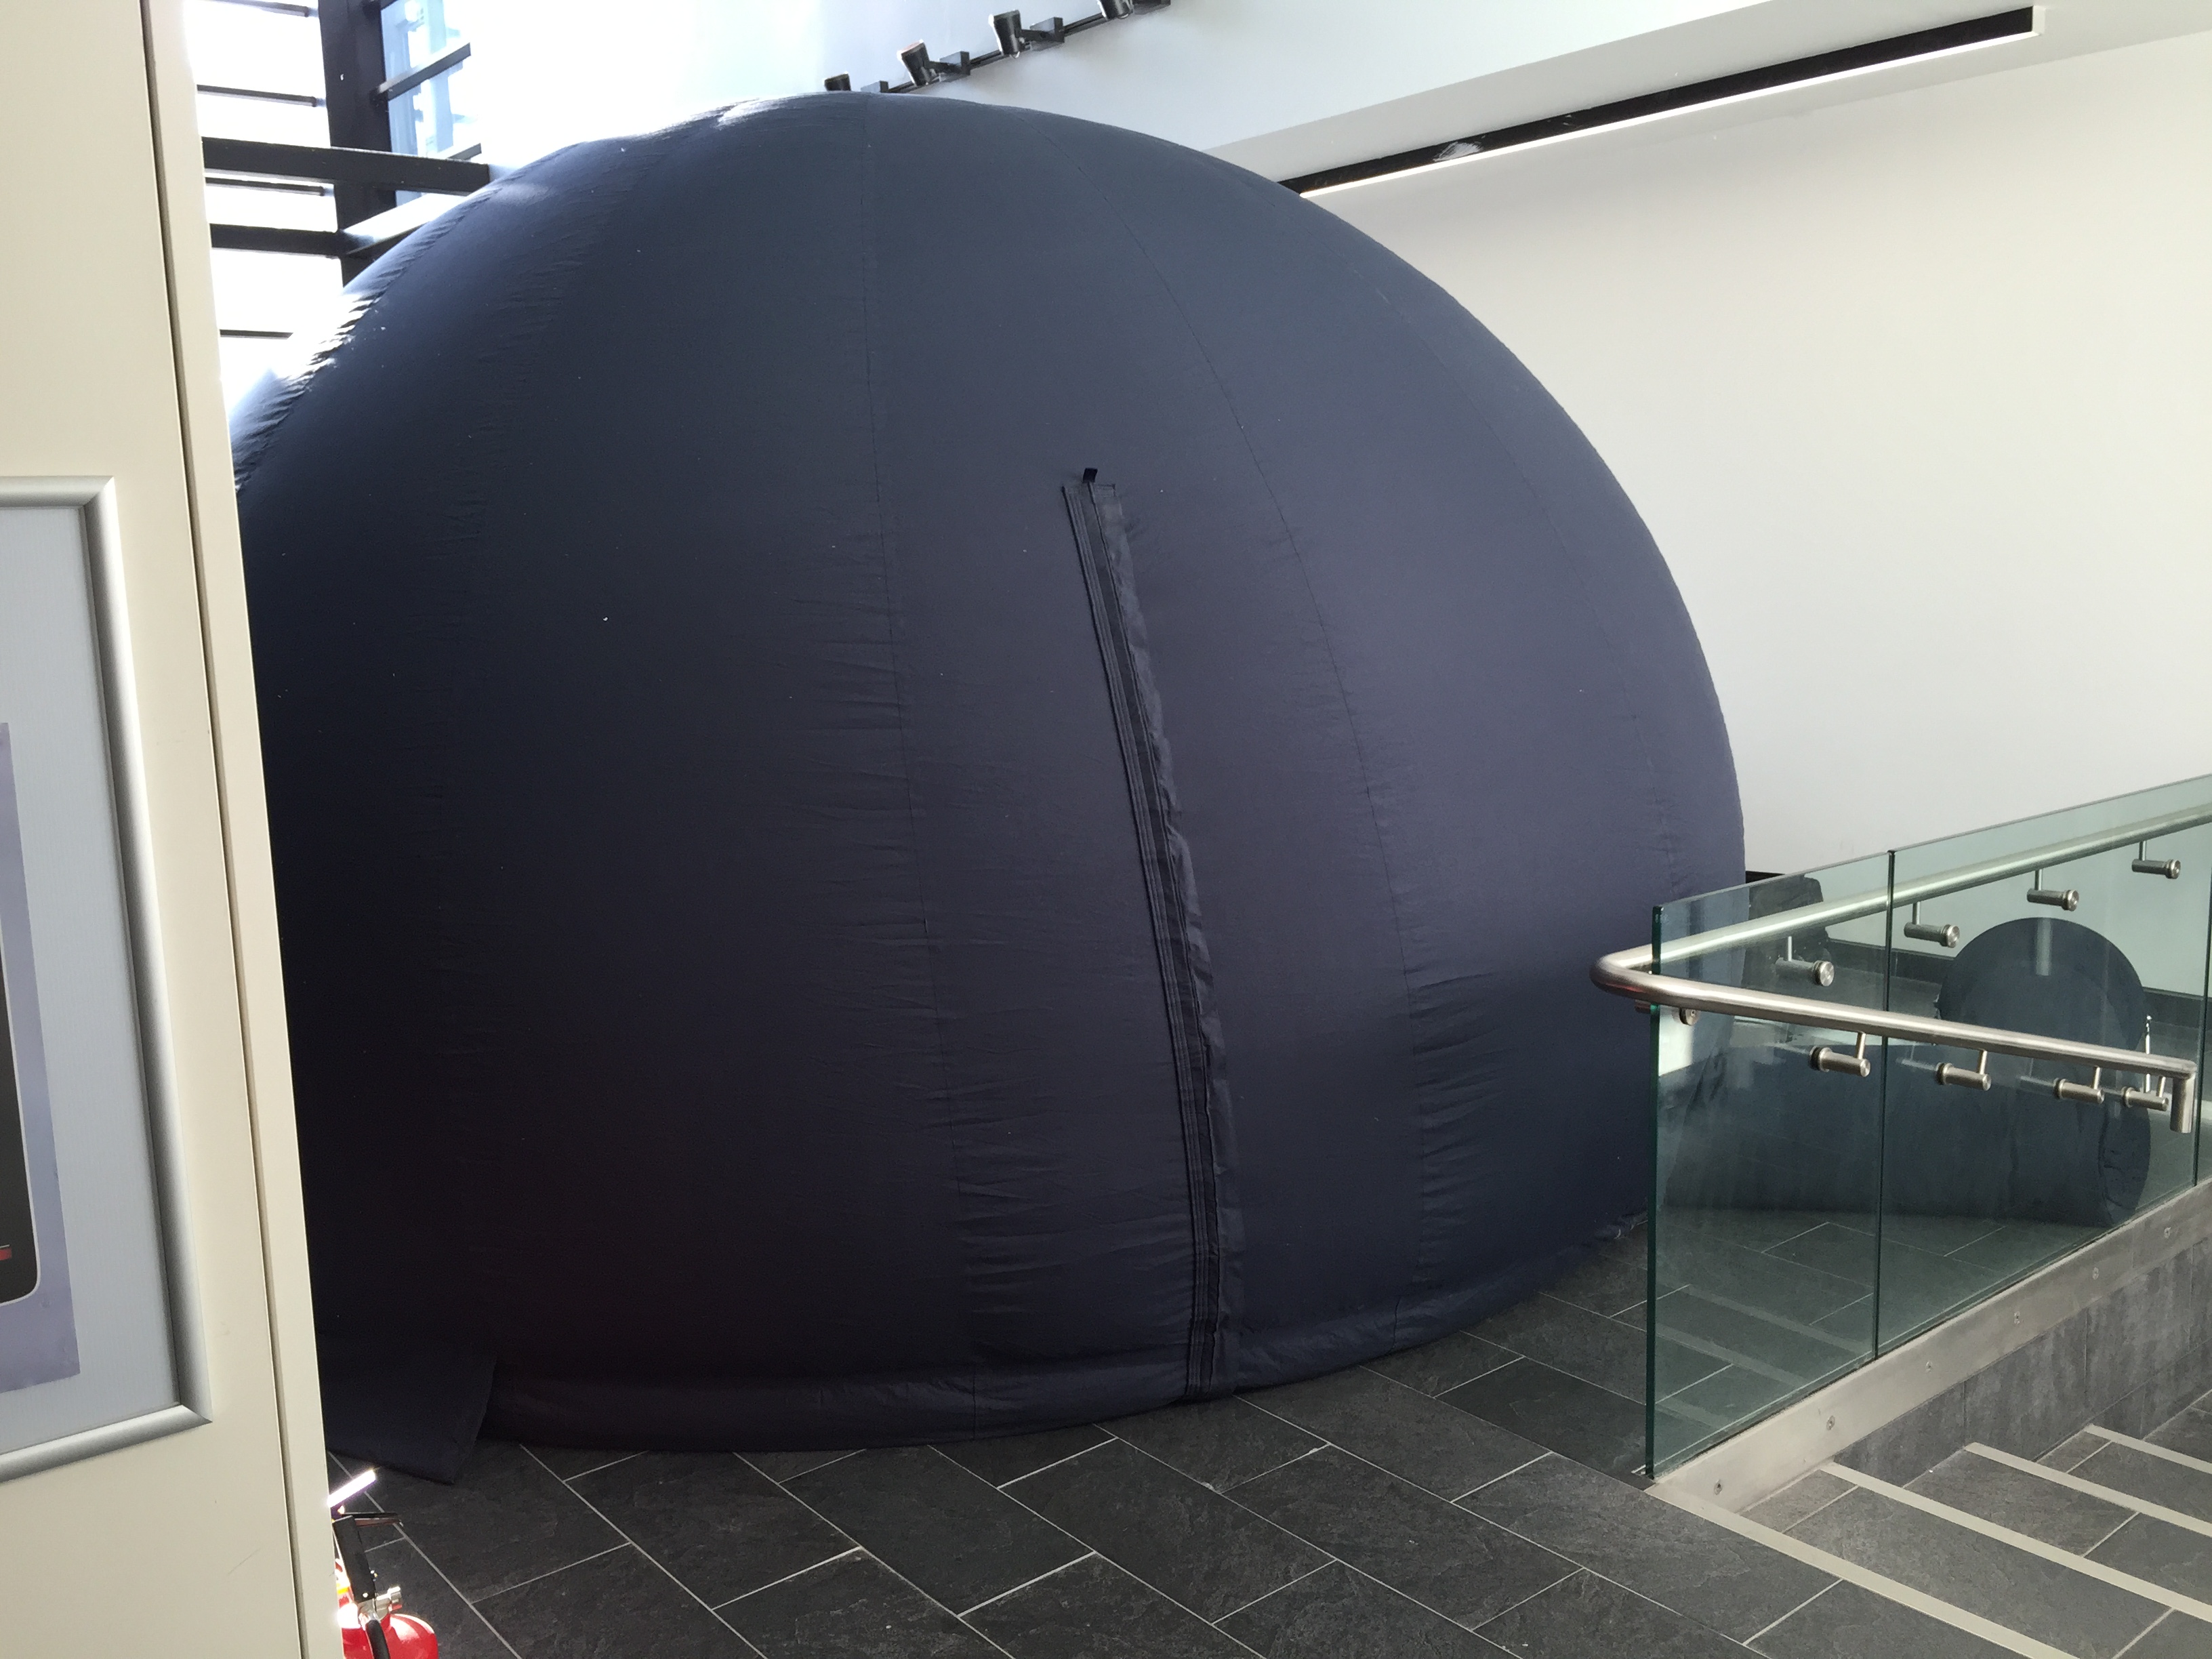 Mobile Planetarium